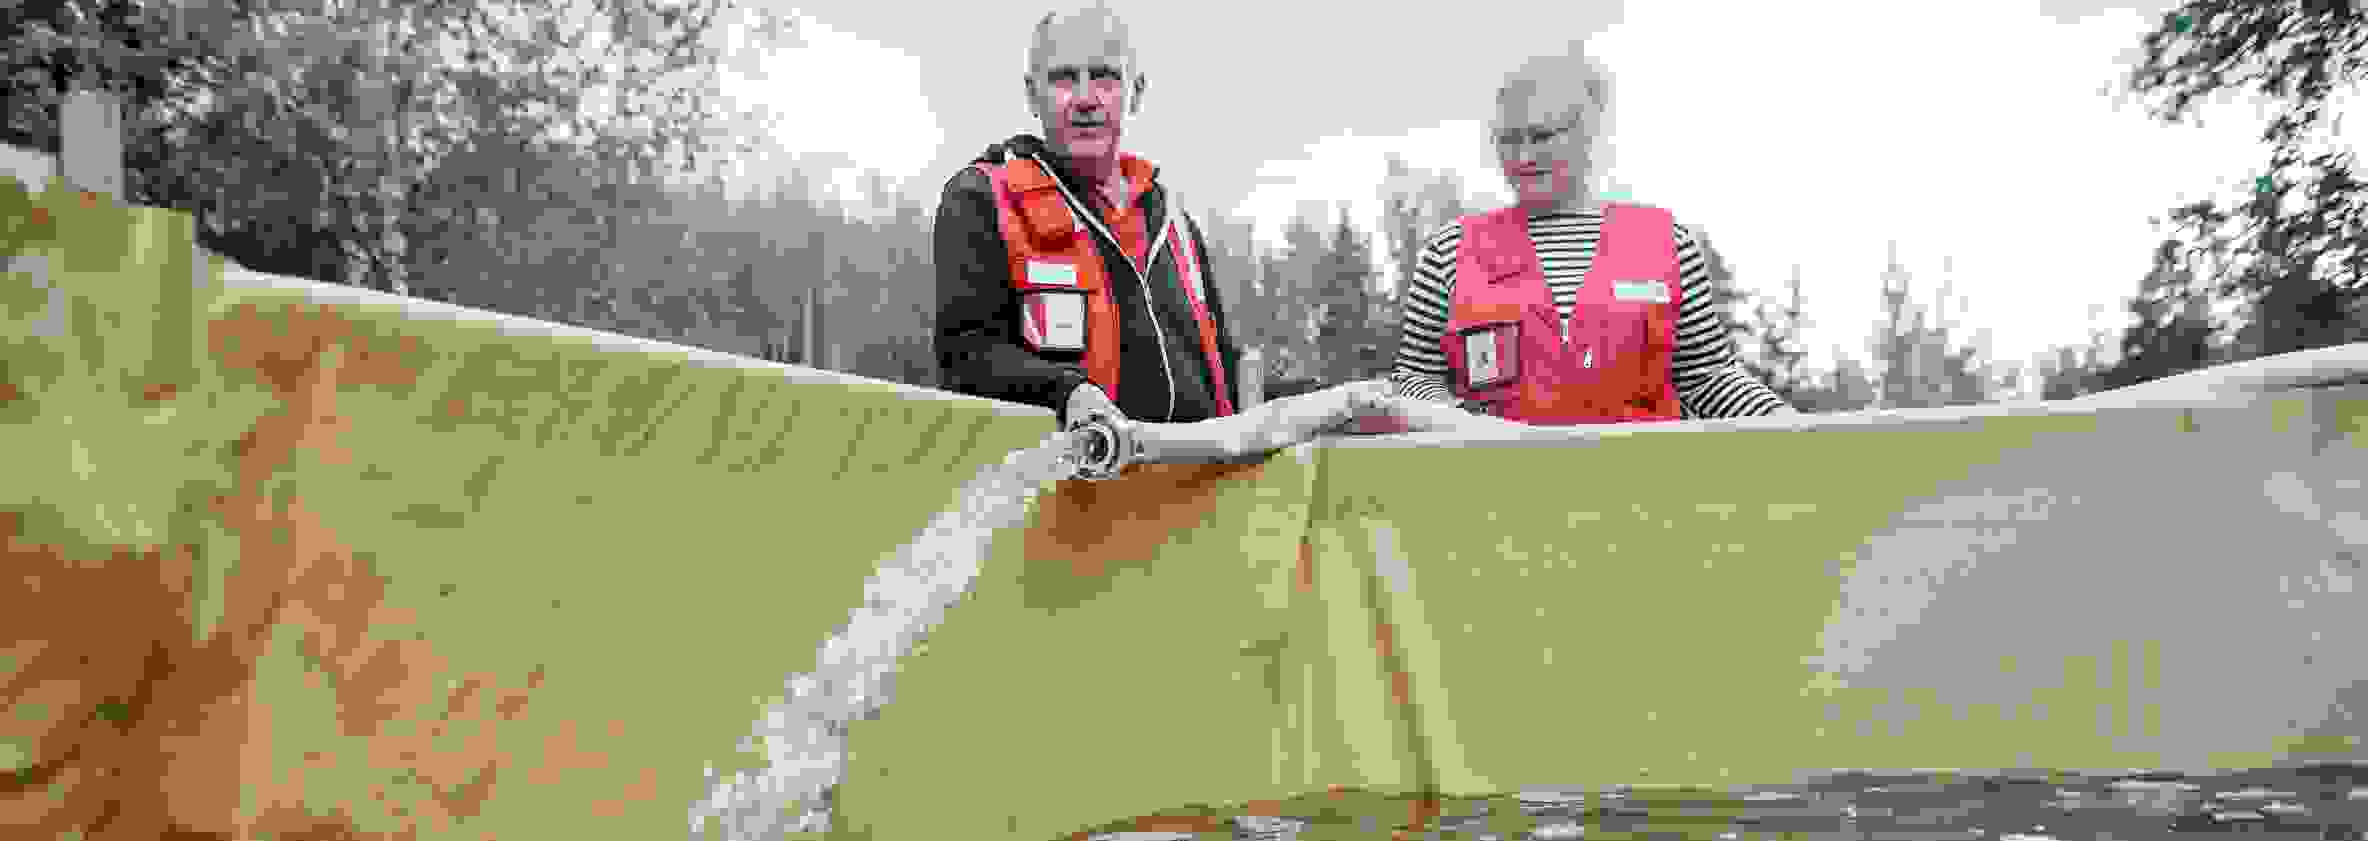 Nainen ja mies Punaisen Ristin varusteissa täyttävät vesiallasta puhtaalla vedellä.